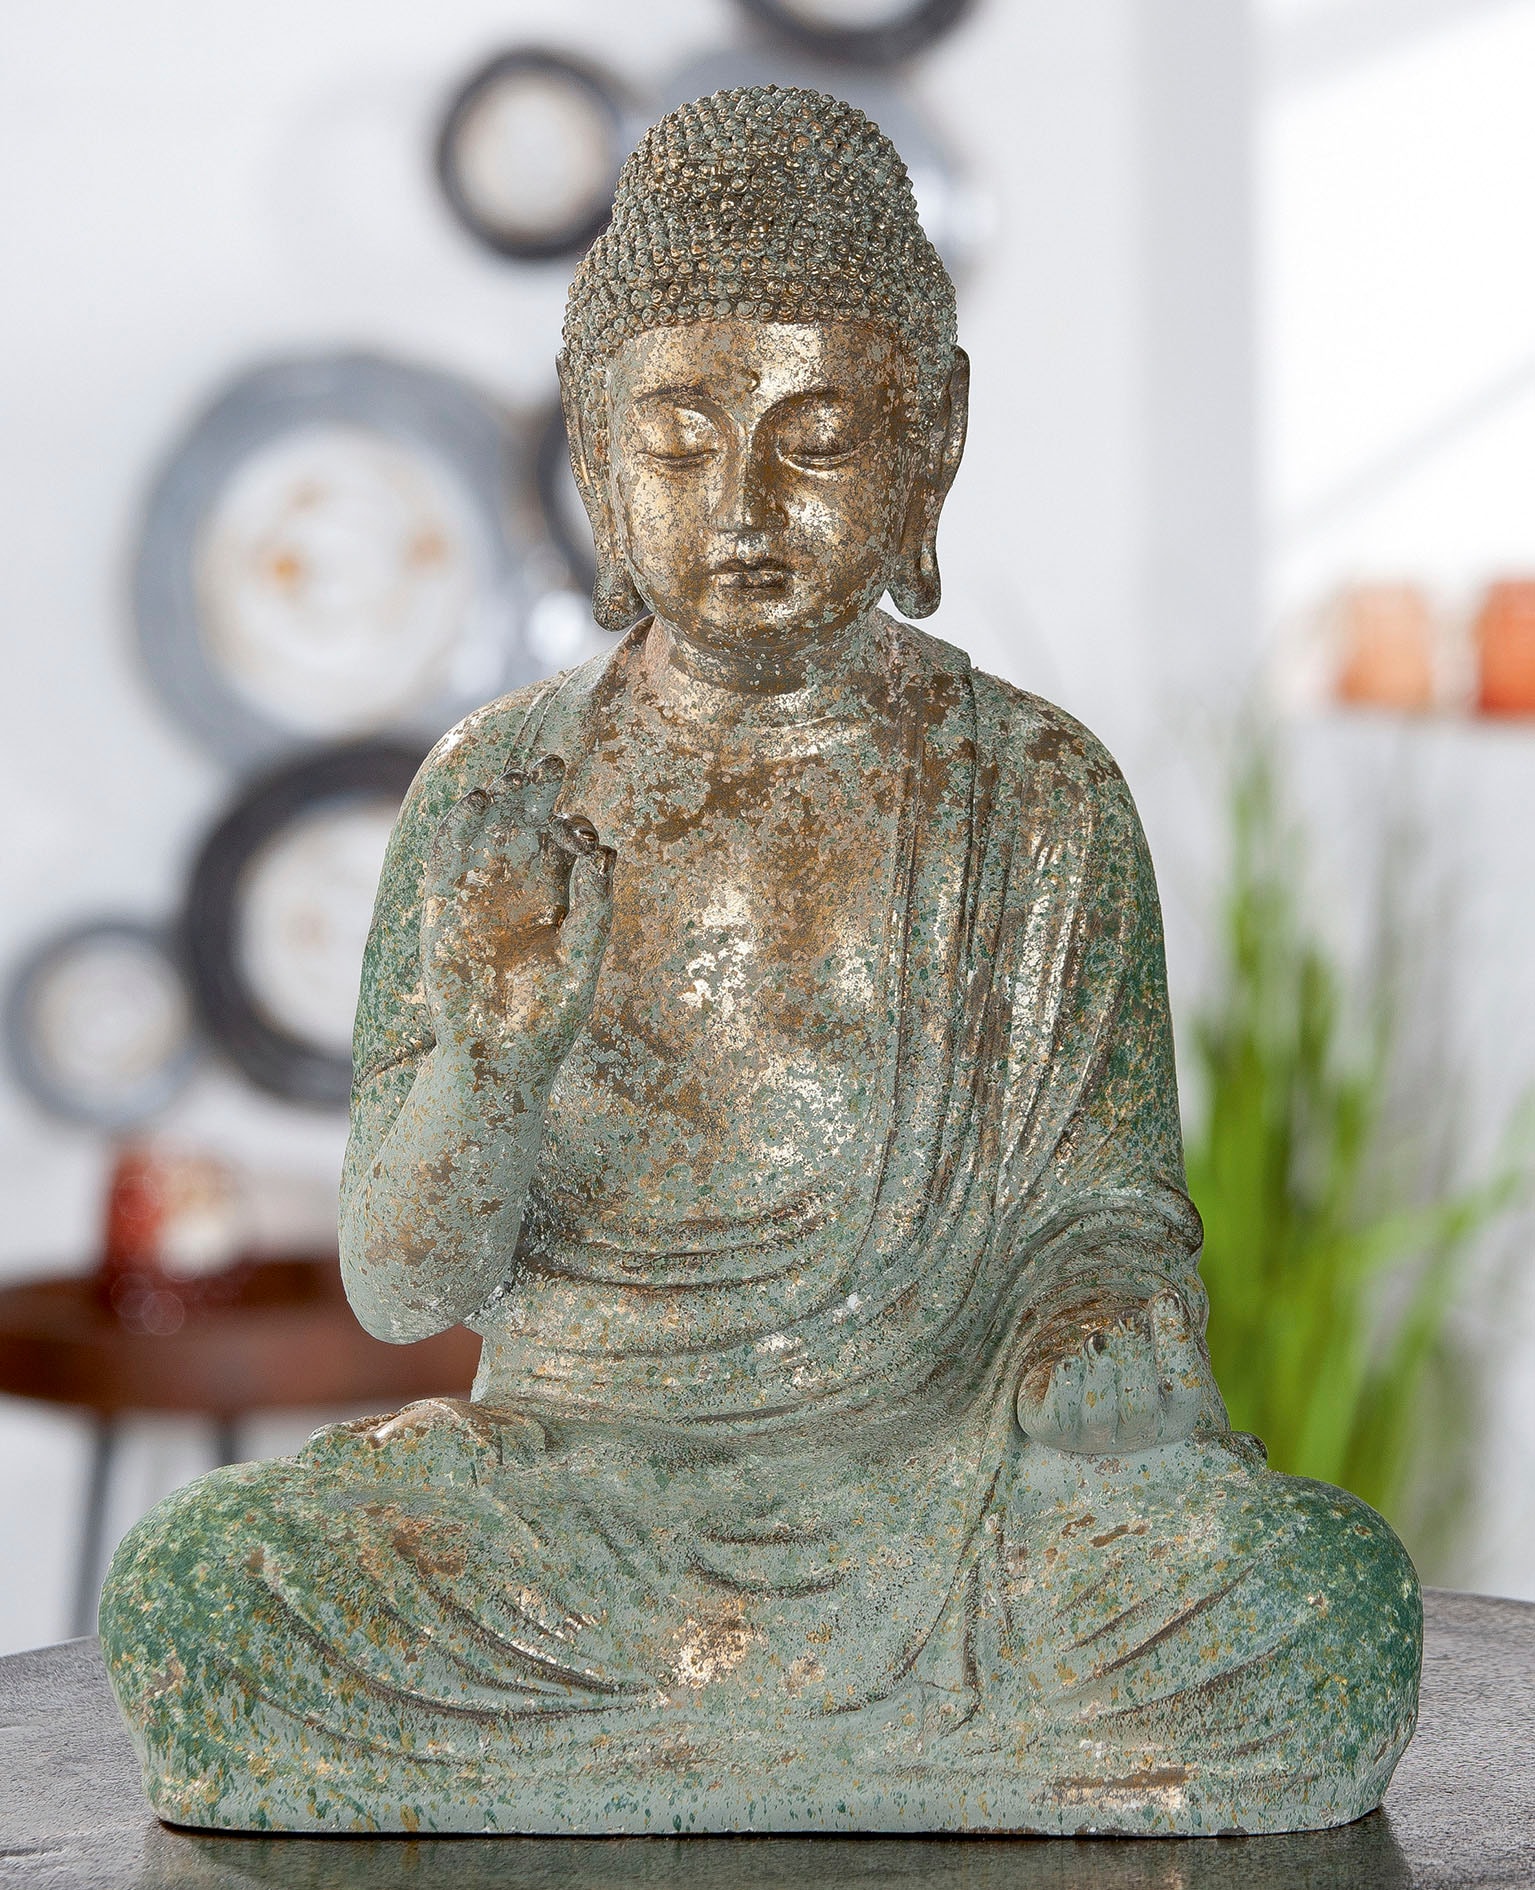 Buddhafiguren auf Rechnung bestellen